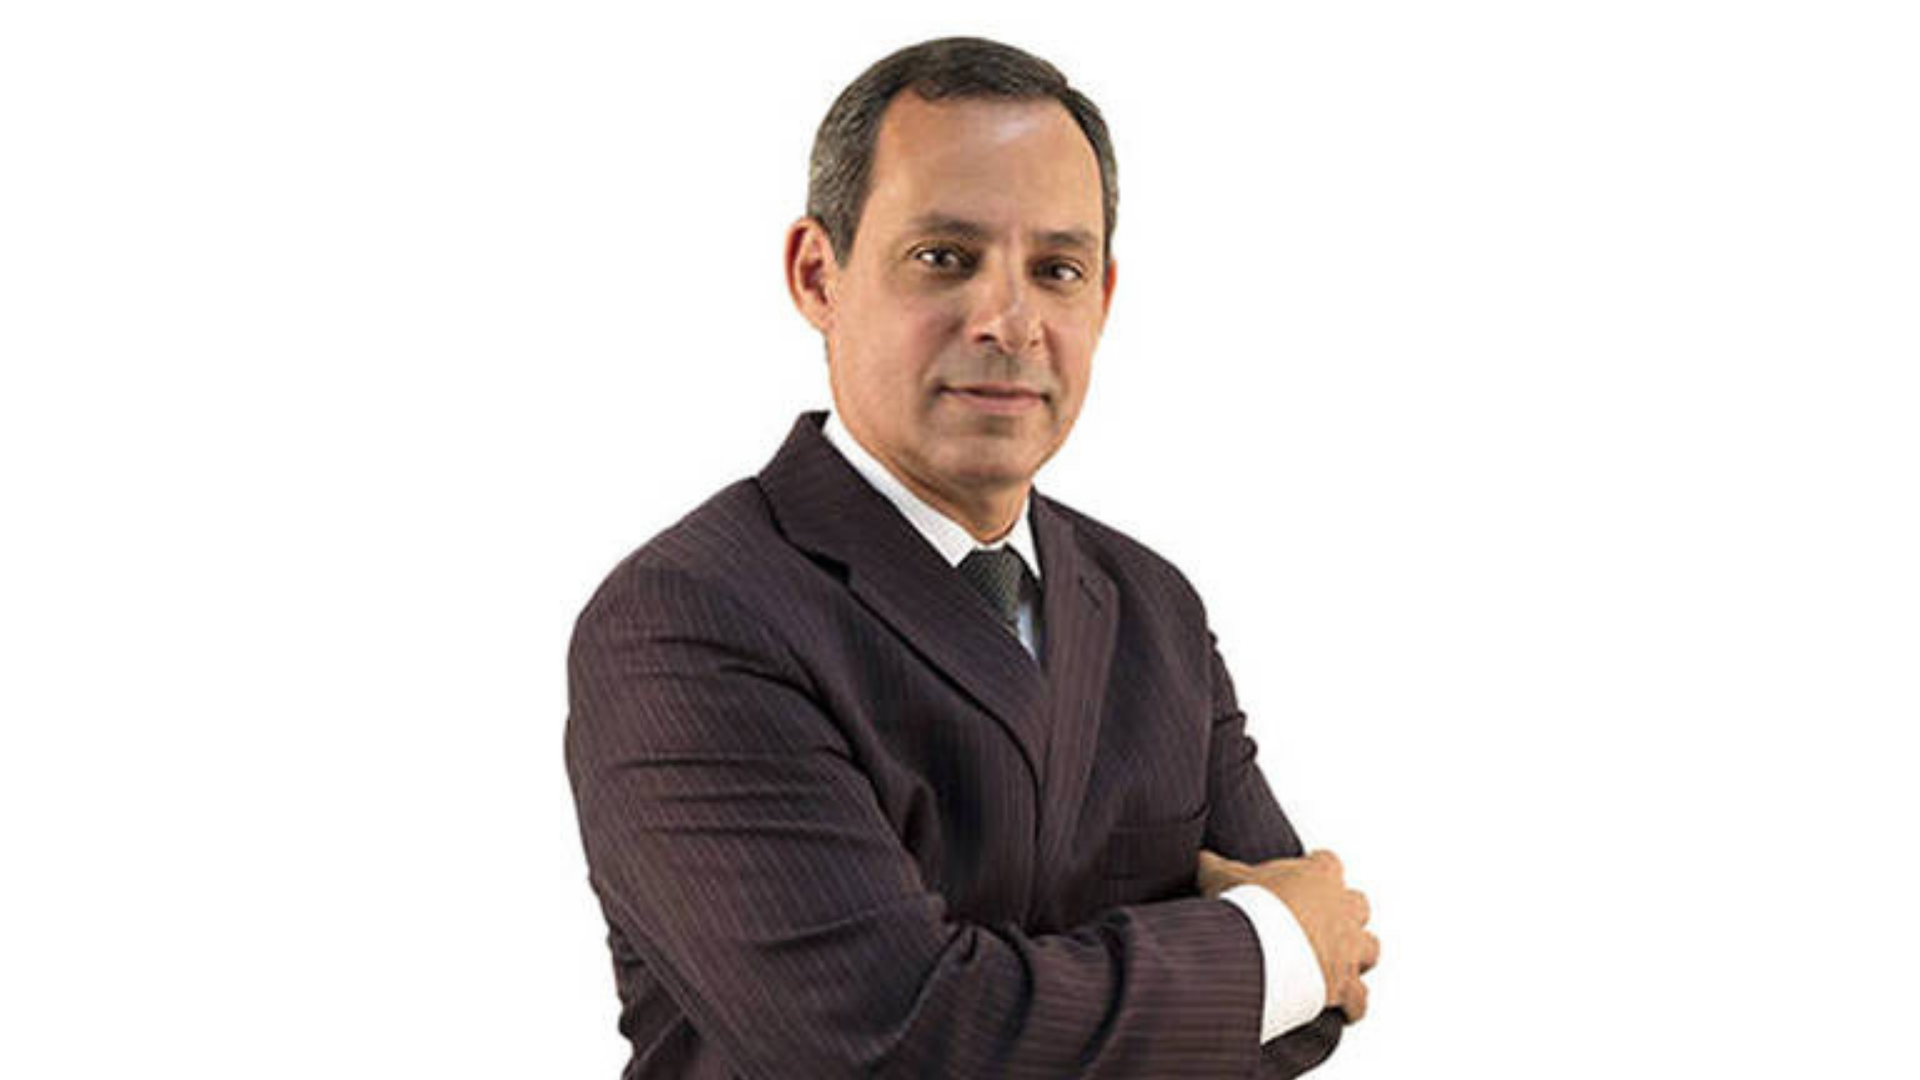 Josué Mauro Coelho: saiba quem é o novo indicado para comandar a Petrobras. Foto do novo indicado Josué Coelho, com pele negra, terno azul e cabelo grisalho.